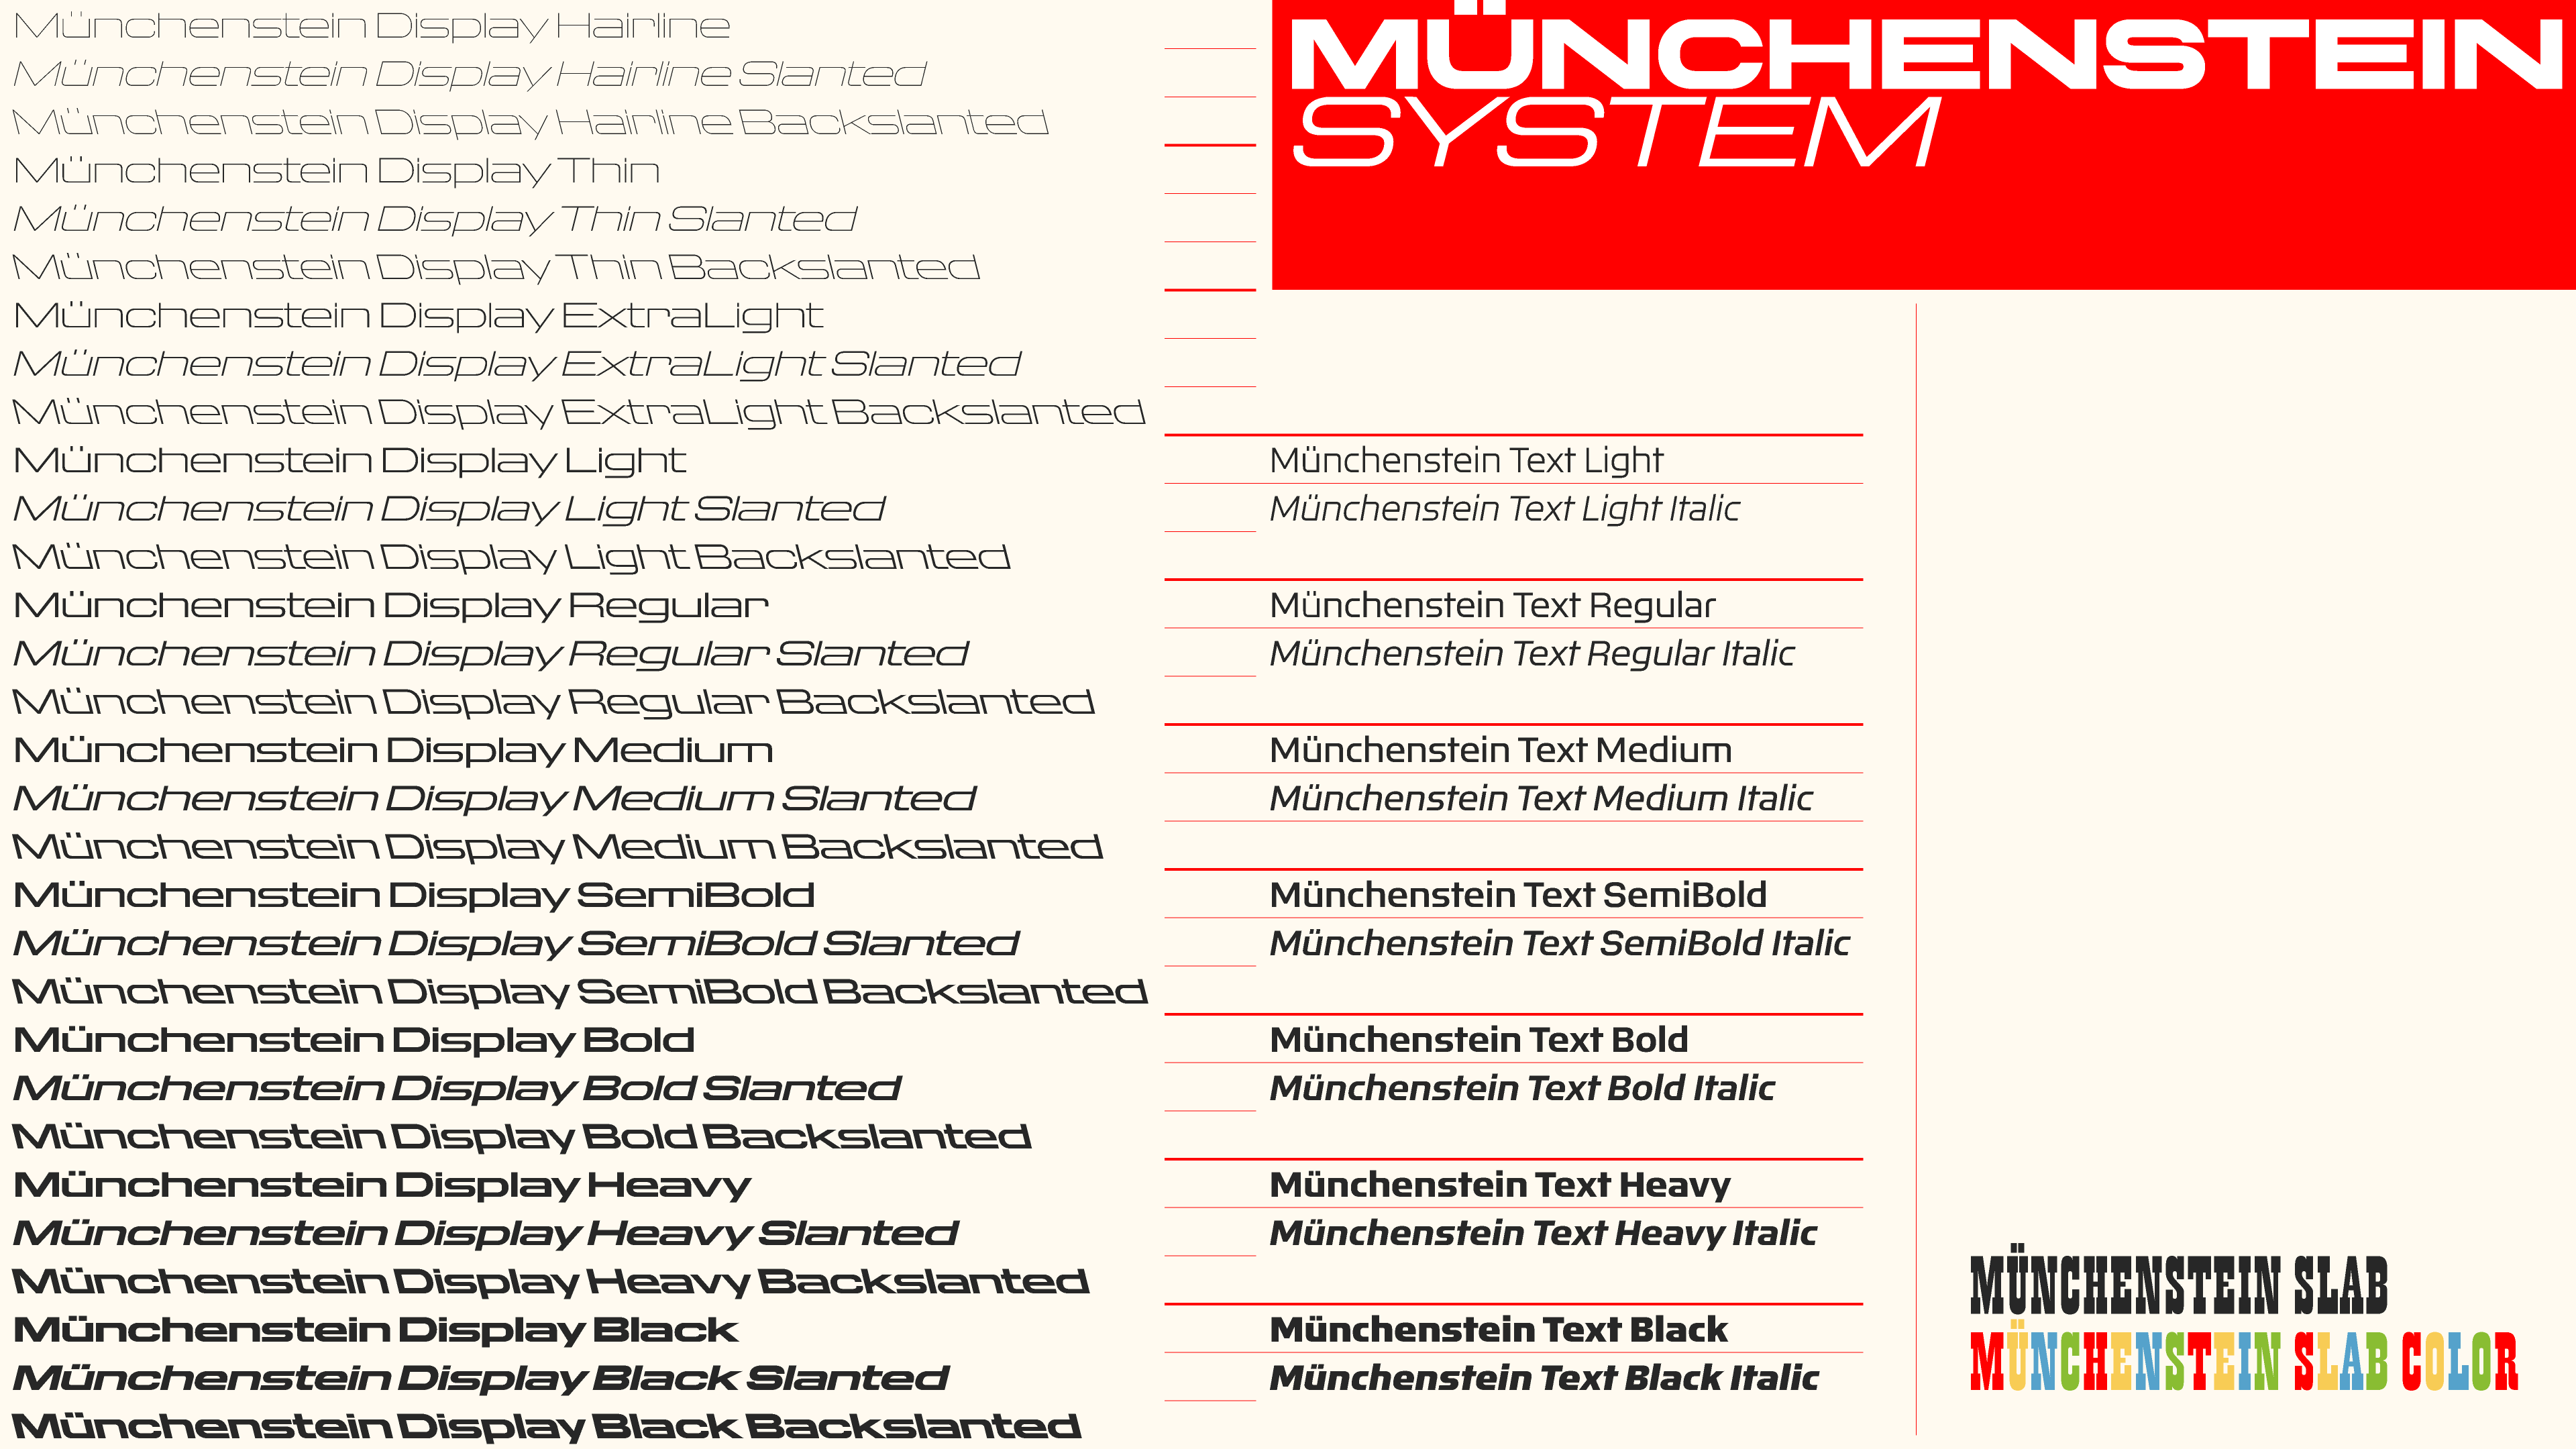 munchenstein overview